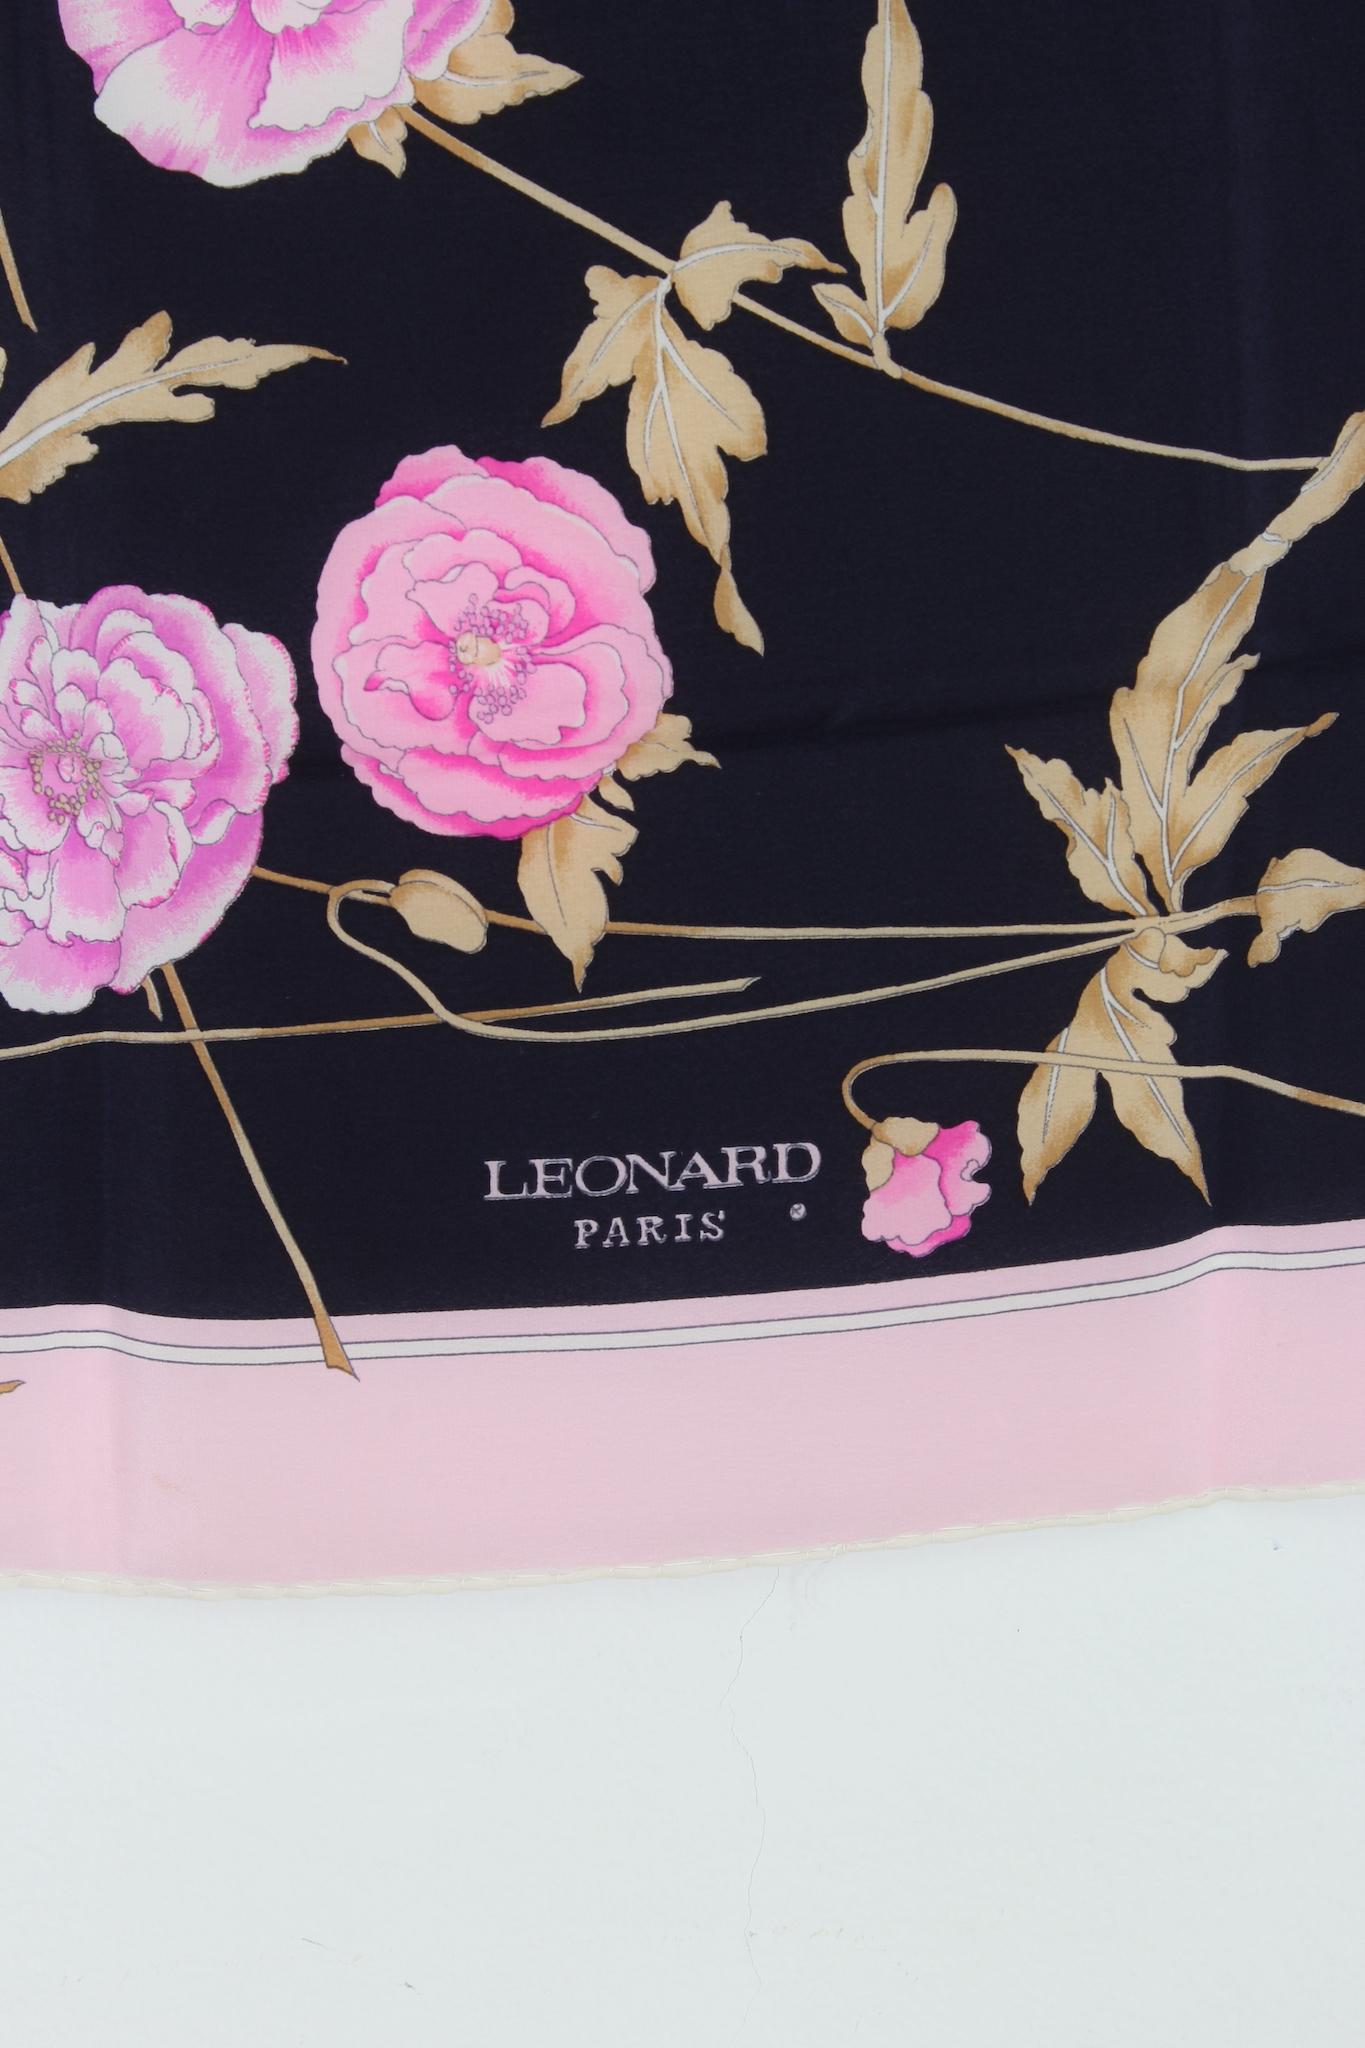 Foulard vintage Leonard Paris des années 1980. Couleur noire avec motif floral rose, 100% soie. Fabriqué en Italie.

Dimensions : 55 x 59 cm